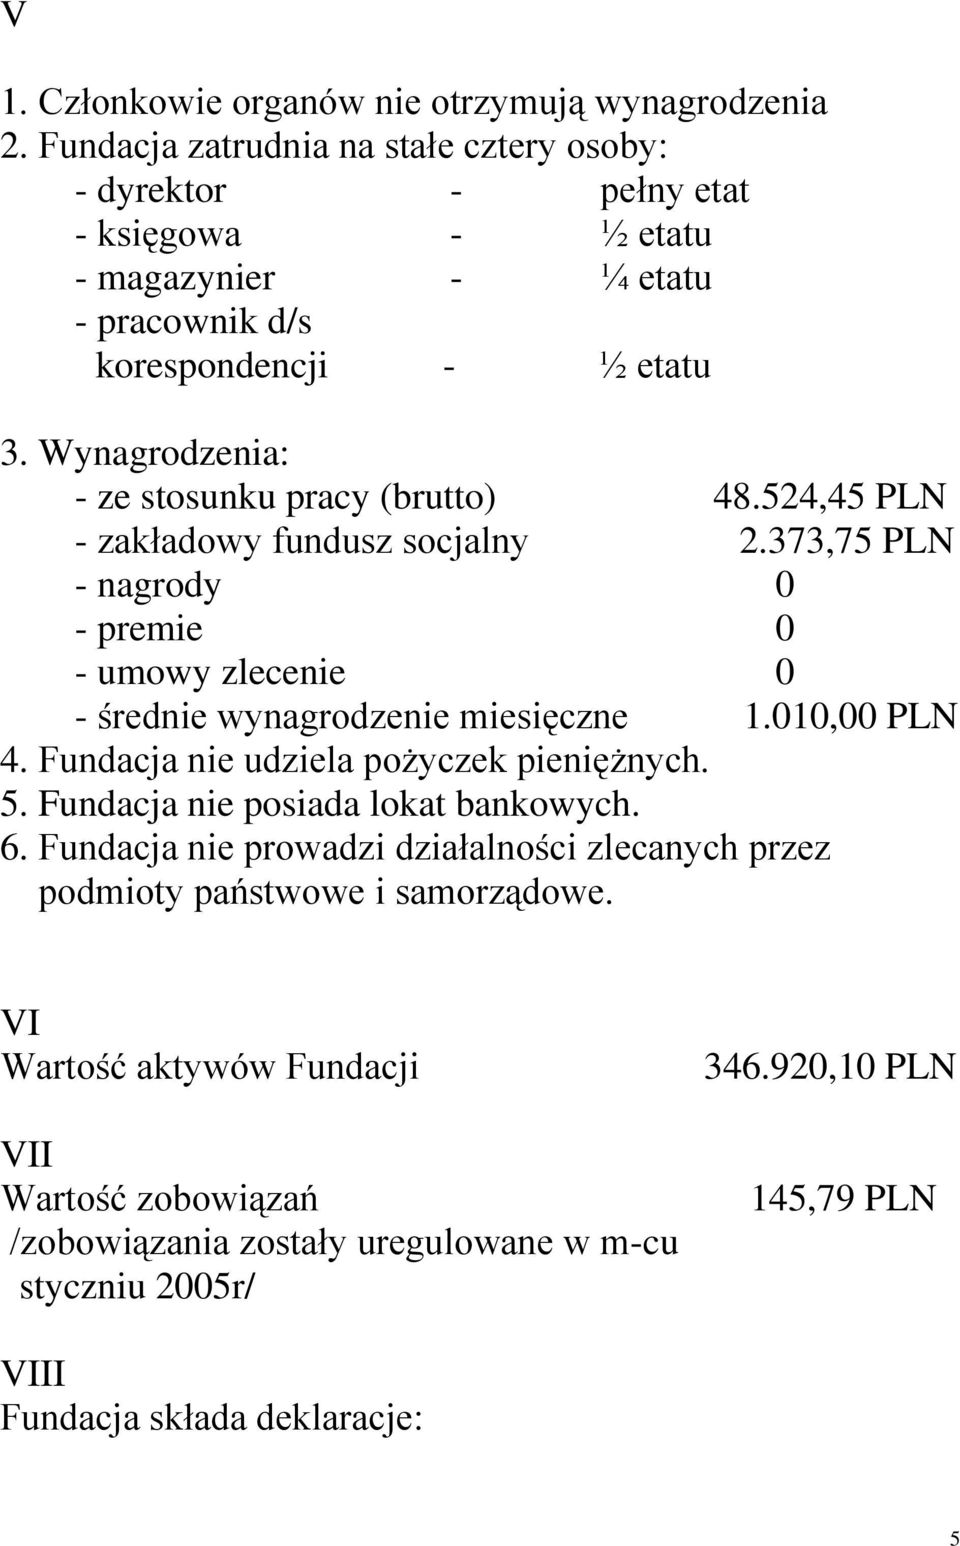 Wynagrodzenia: - ze stosunku pracy (brutto) 48.524,45 PLN - zakładowy fundusz socjalny 2.373,75 PLN - nagrody 0 - premie 0 - umowy zlecenie 0 - średnie wynagrodzenie miesięczne 1.